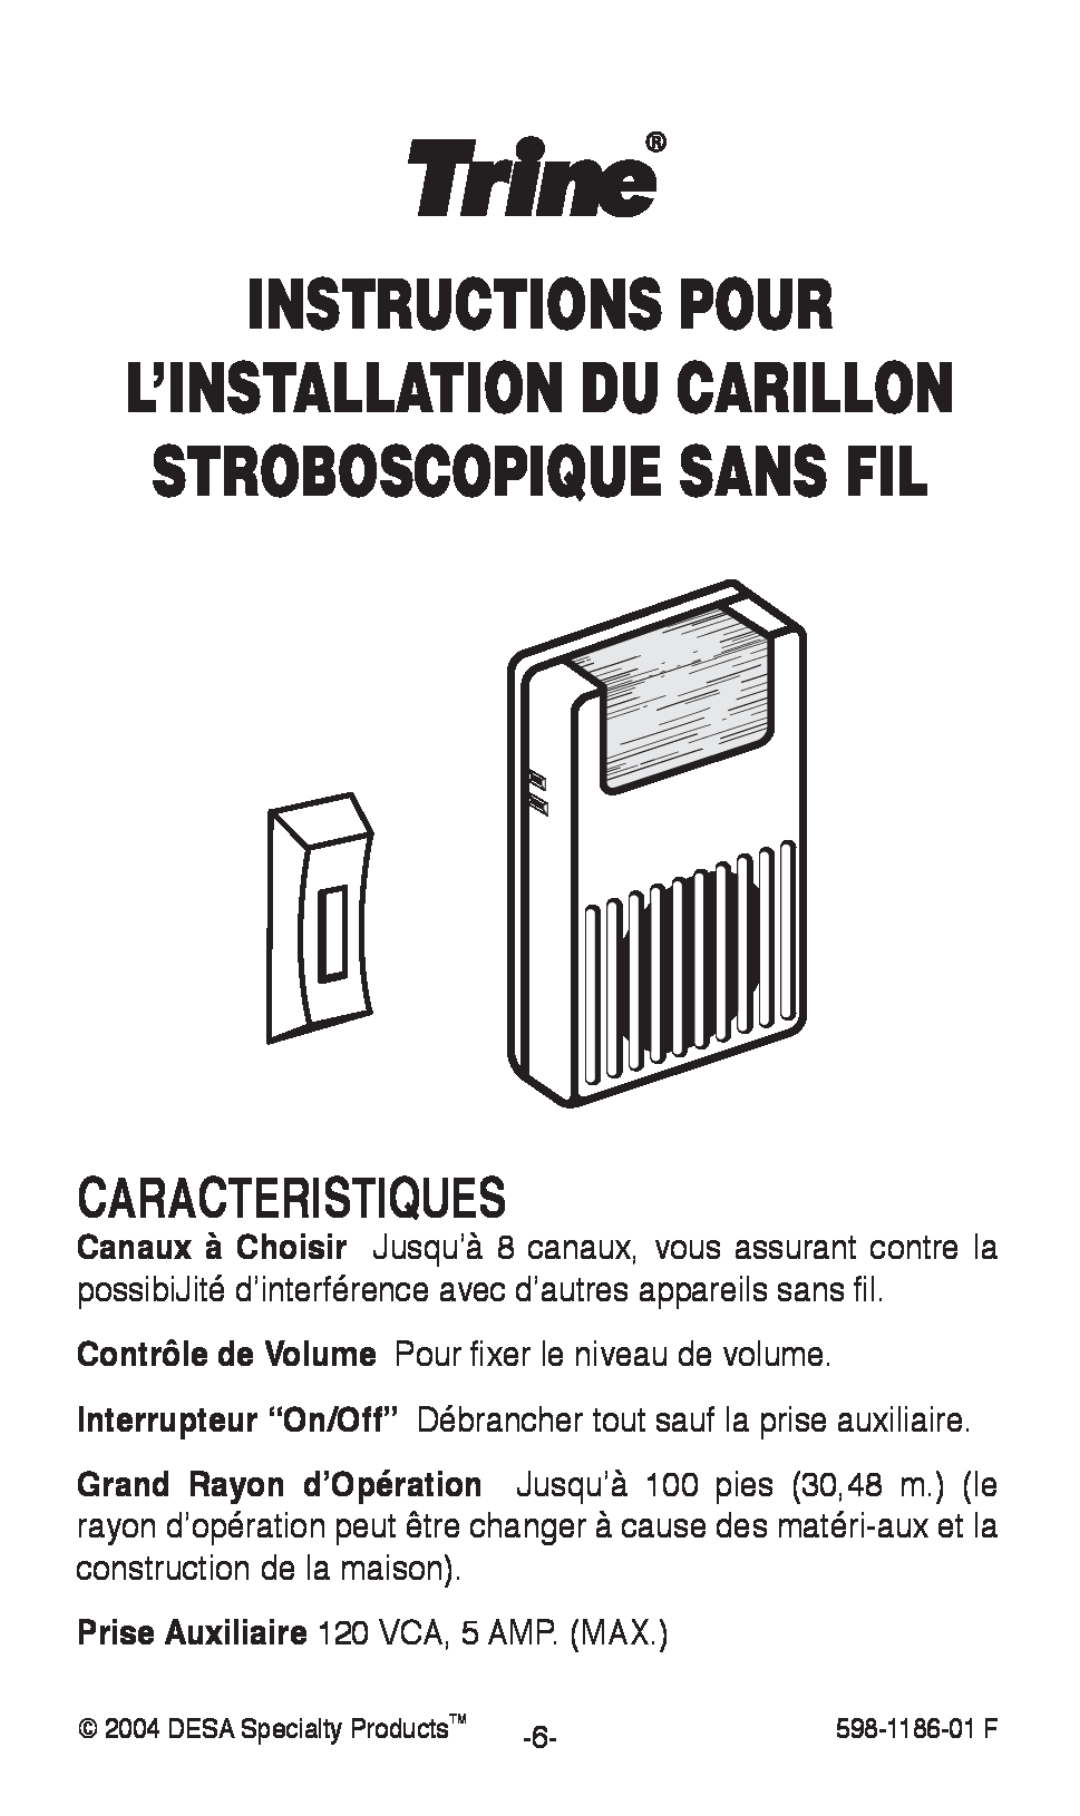 Desa 598-1186-01 Instructions Pour, Caracteristiques, L’Installation Du Carillon Stroboscopique Sans Fil 